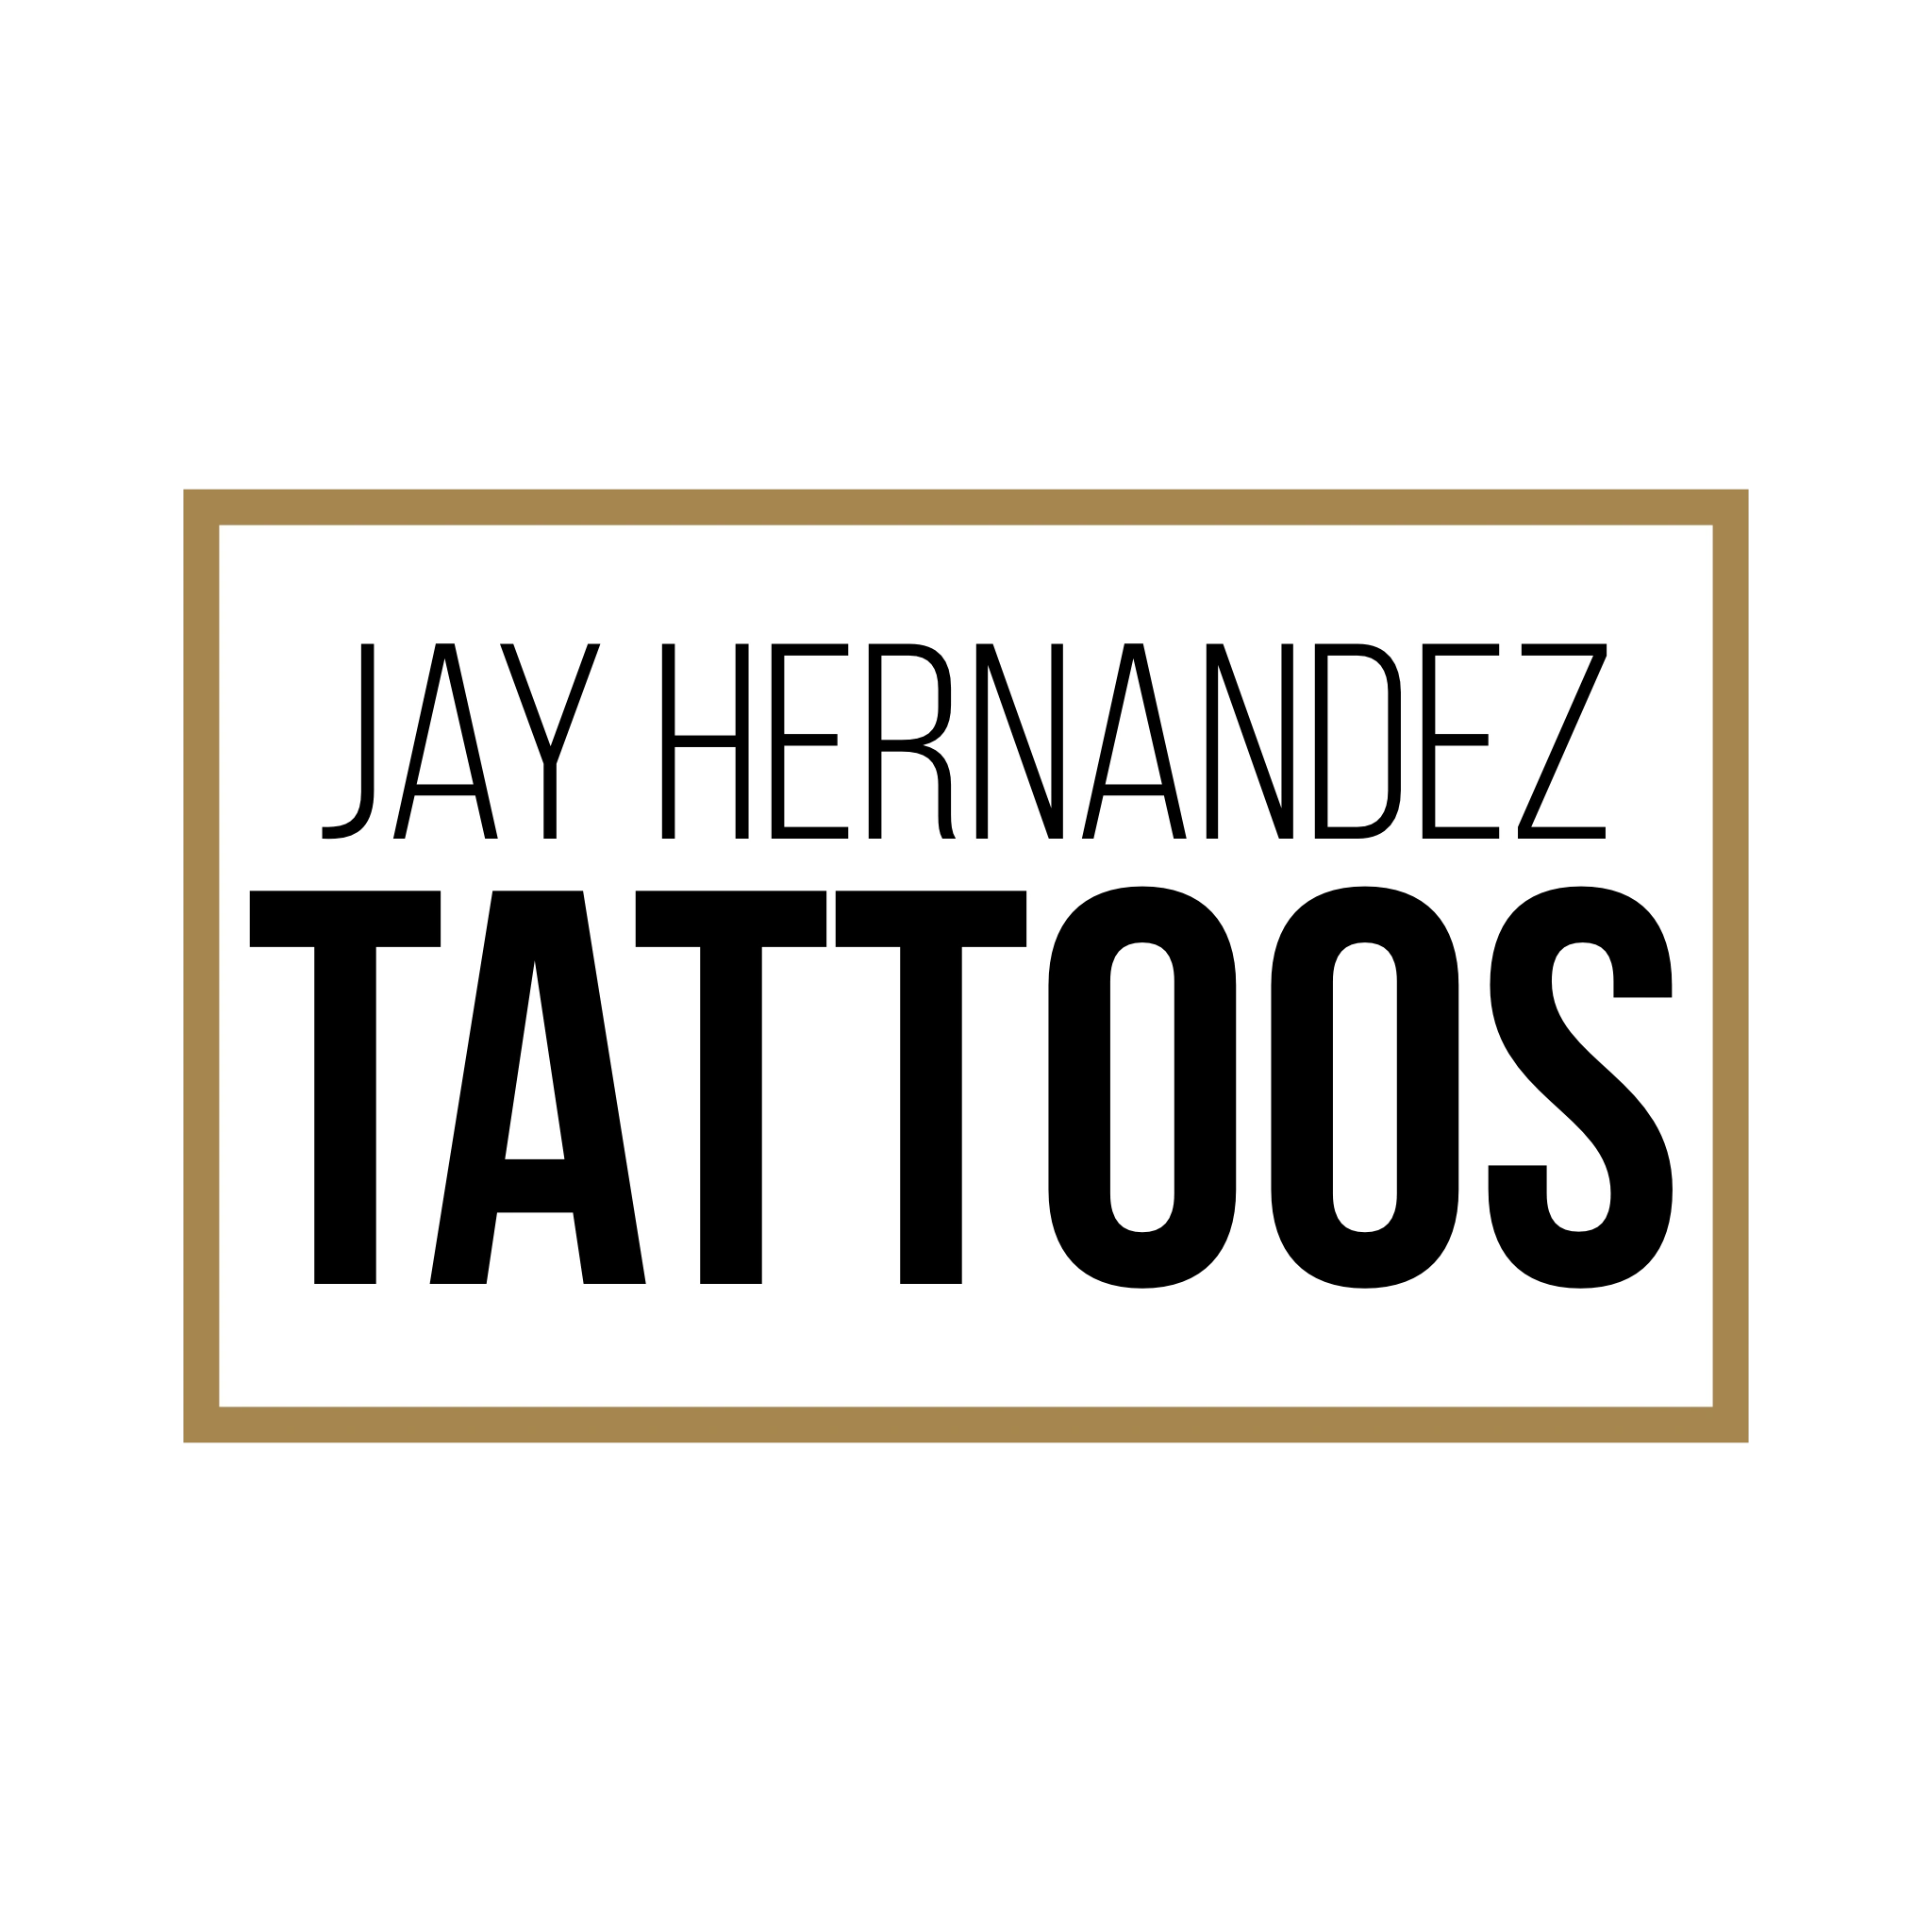 New Jersey tattoo artist best tattoos
